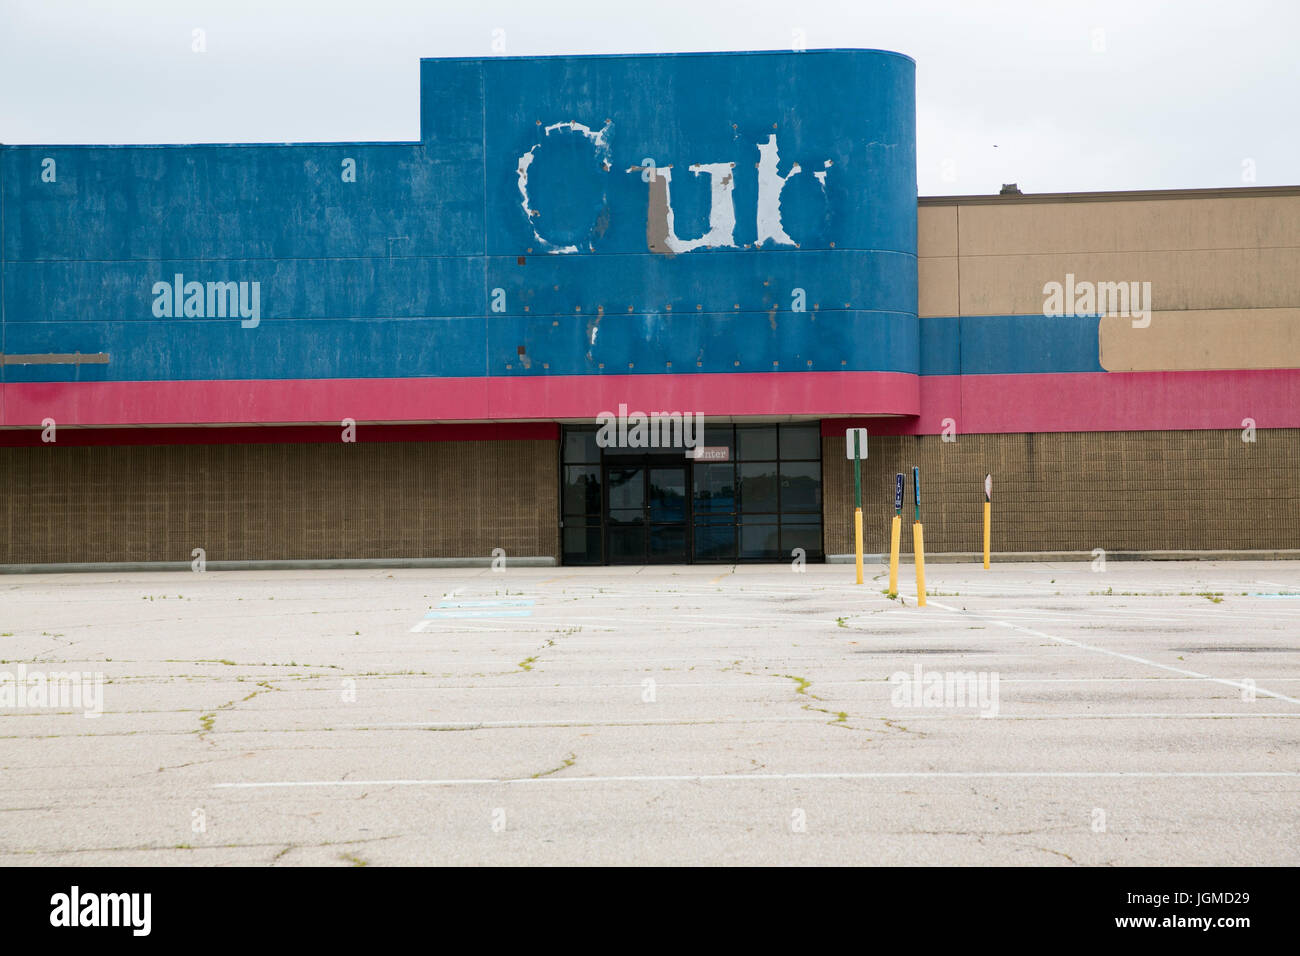 Un logo segno esterno di una chiusa e abbandonata Cub Foods store retail in Trotwood, Ohio, 30 giugno 2017. Foto Stock